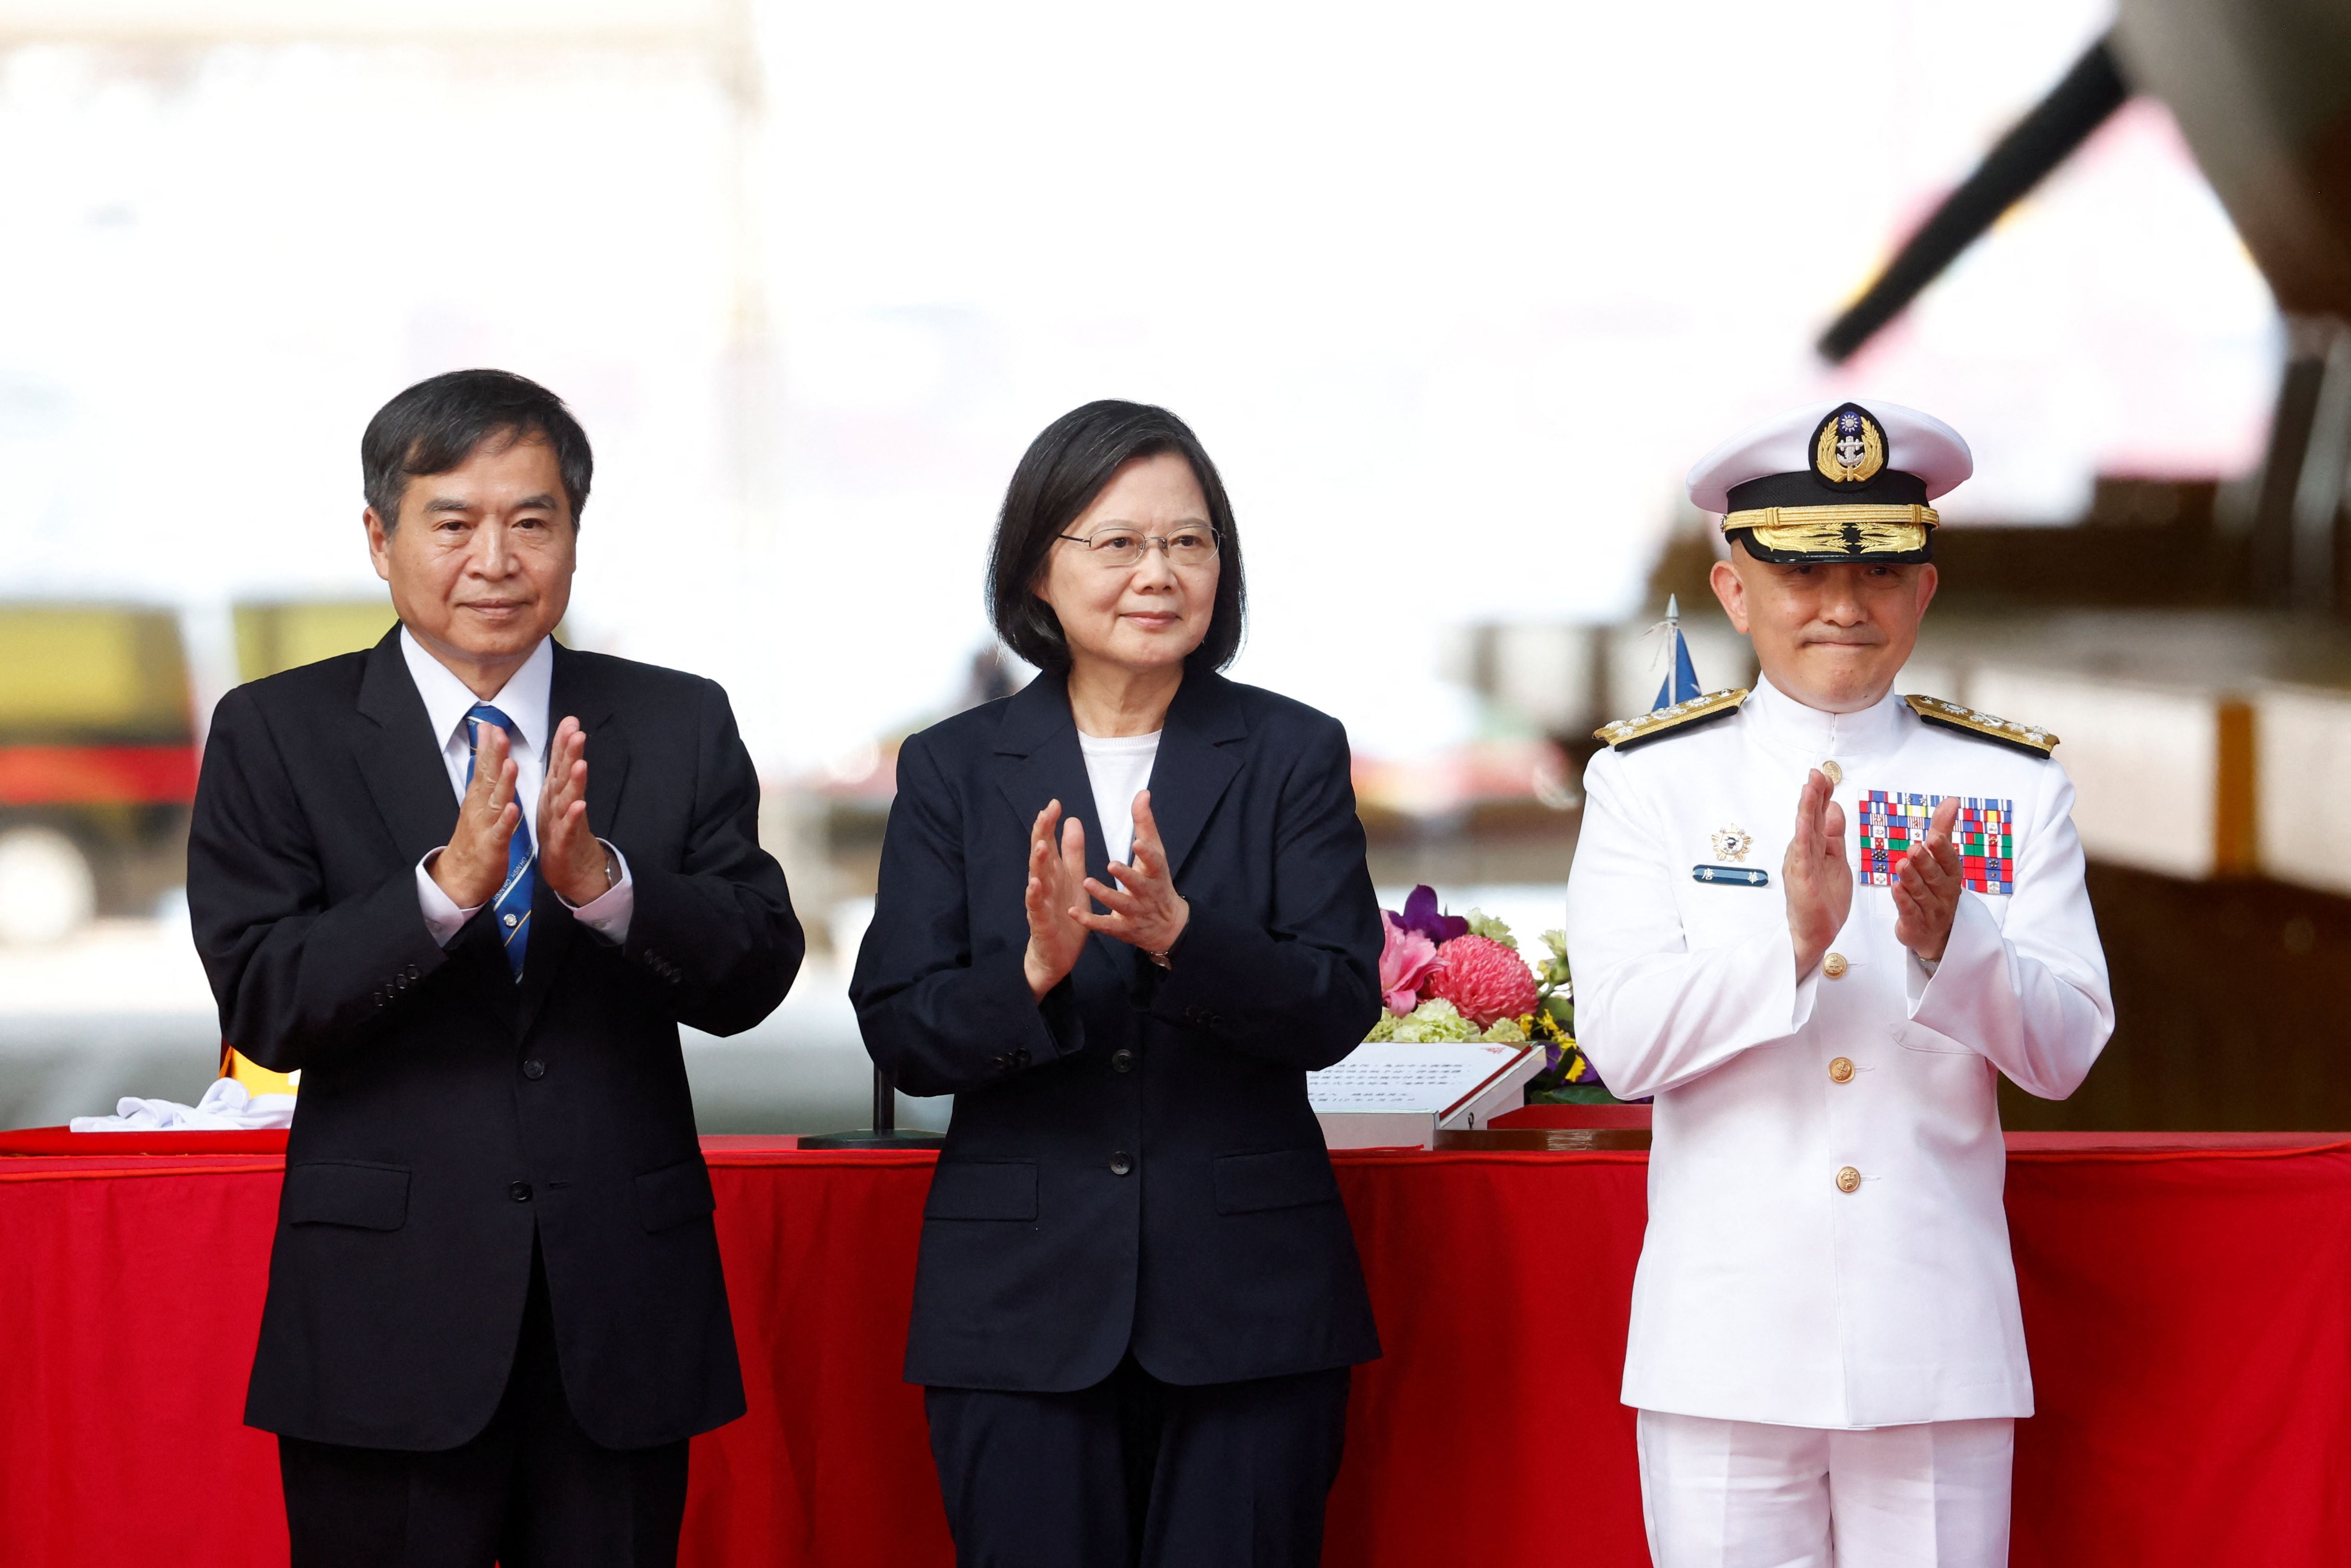 Cheng Wen-lon, presidente del fabricante de submarinos CSBC Corp, que se especializa en embarcaciones militares, dijo que el proceso de construcción de siete años hizo que el equipo trabajara las 24 horas del día. (REUTERS)